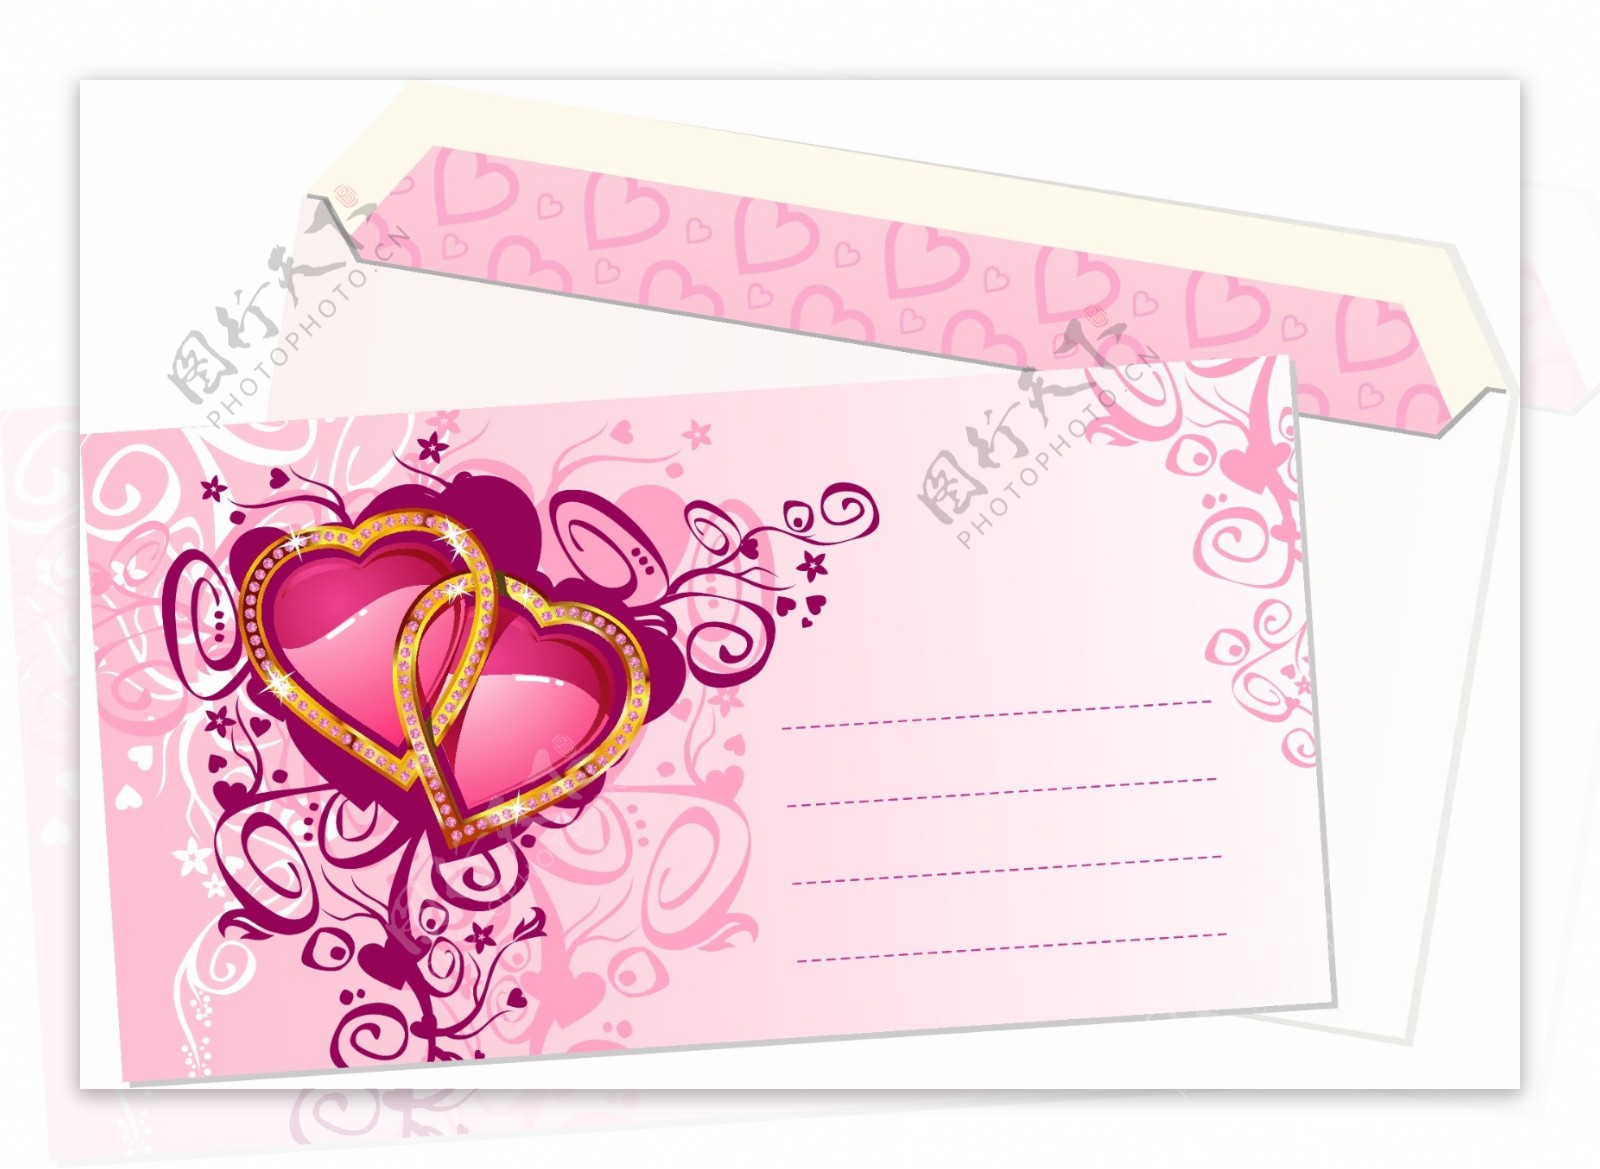 粉红色的心形图案的信封矢量素材